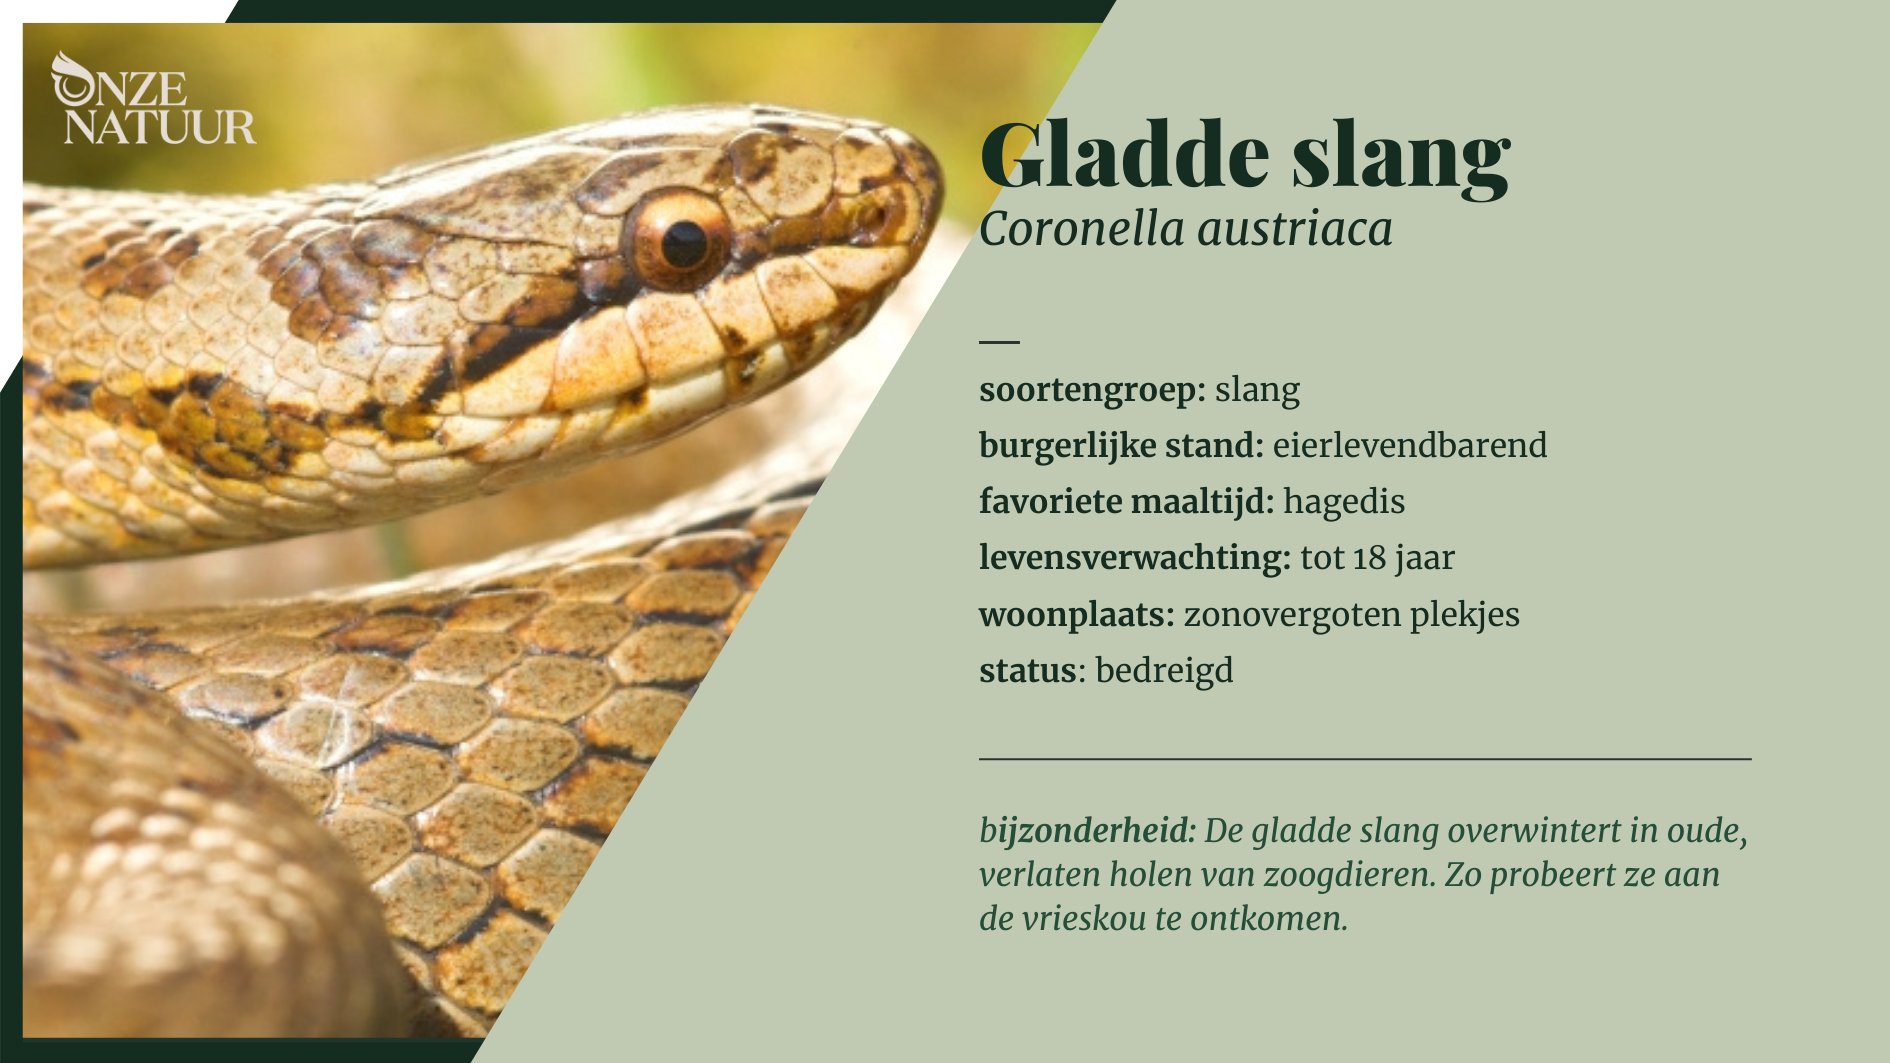 fiche-gladde-slang-nl.png